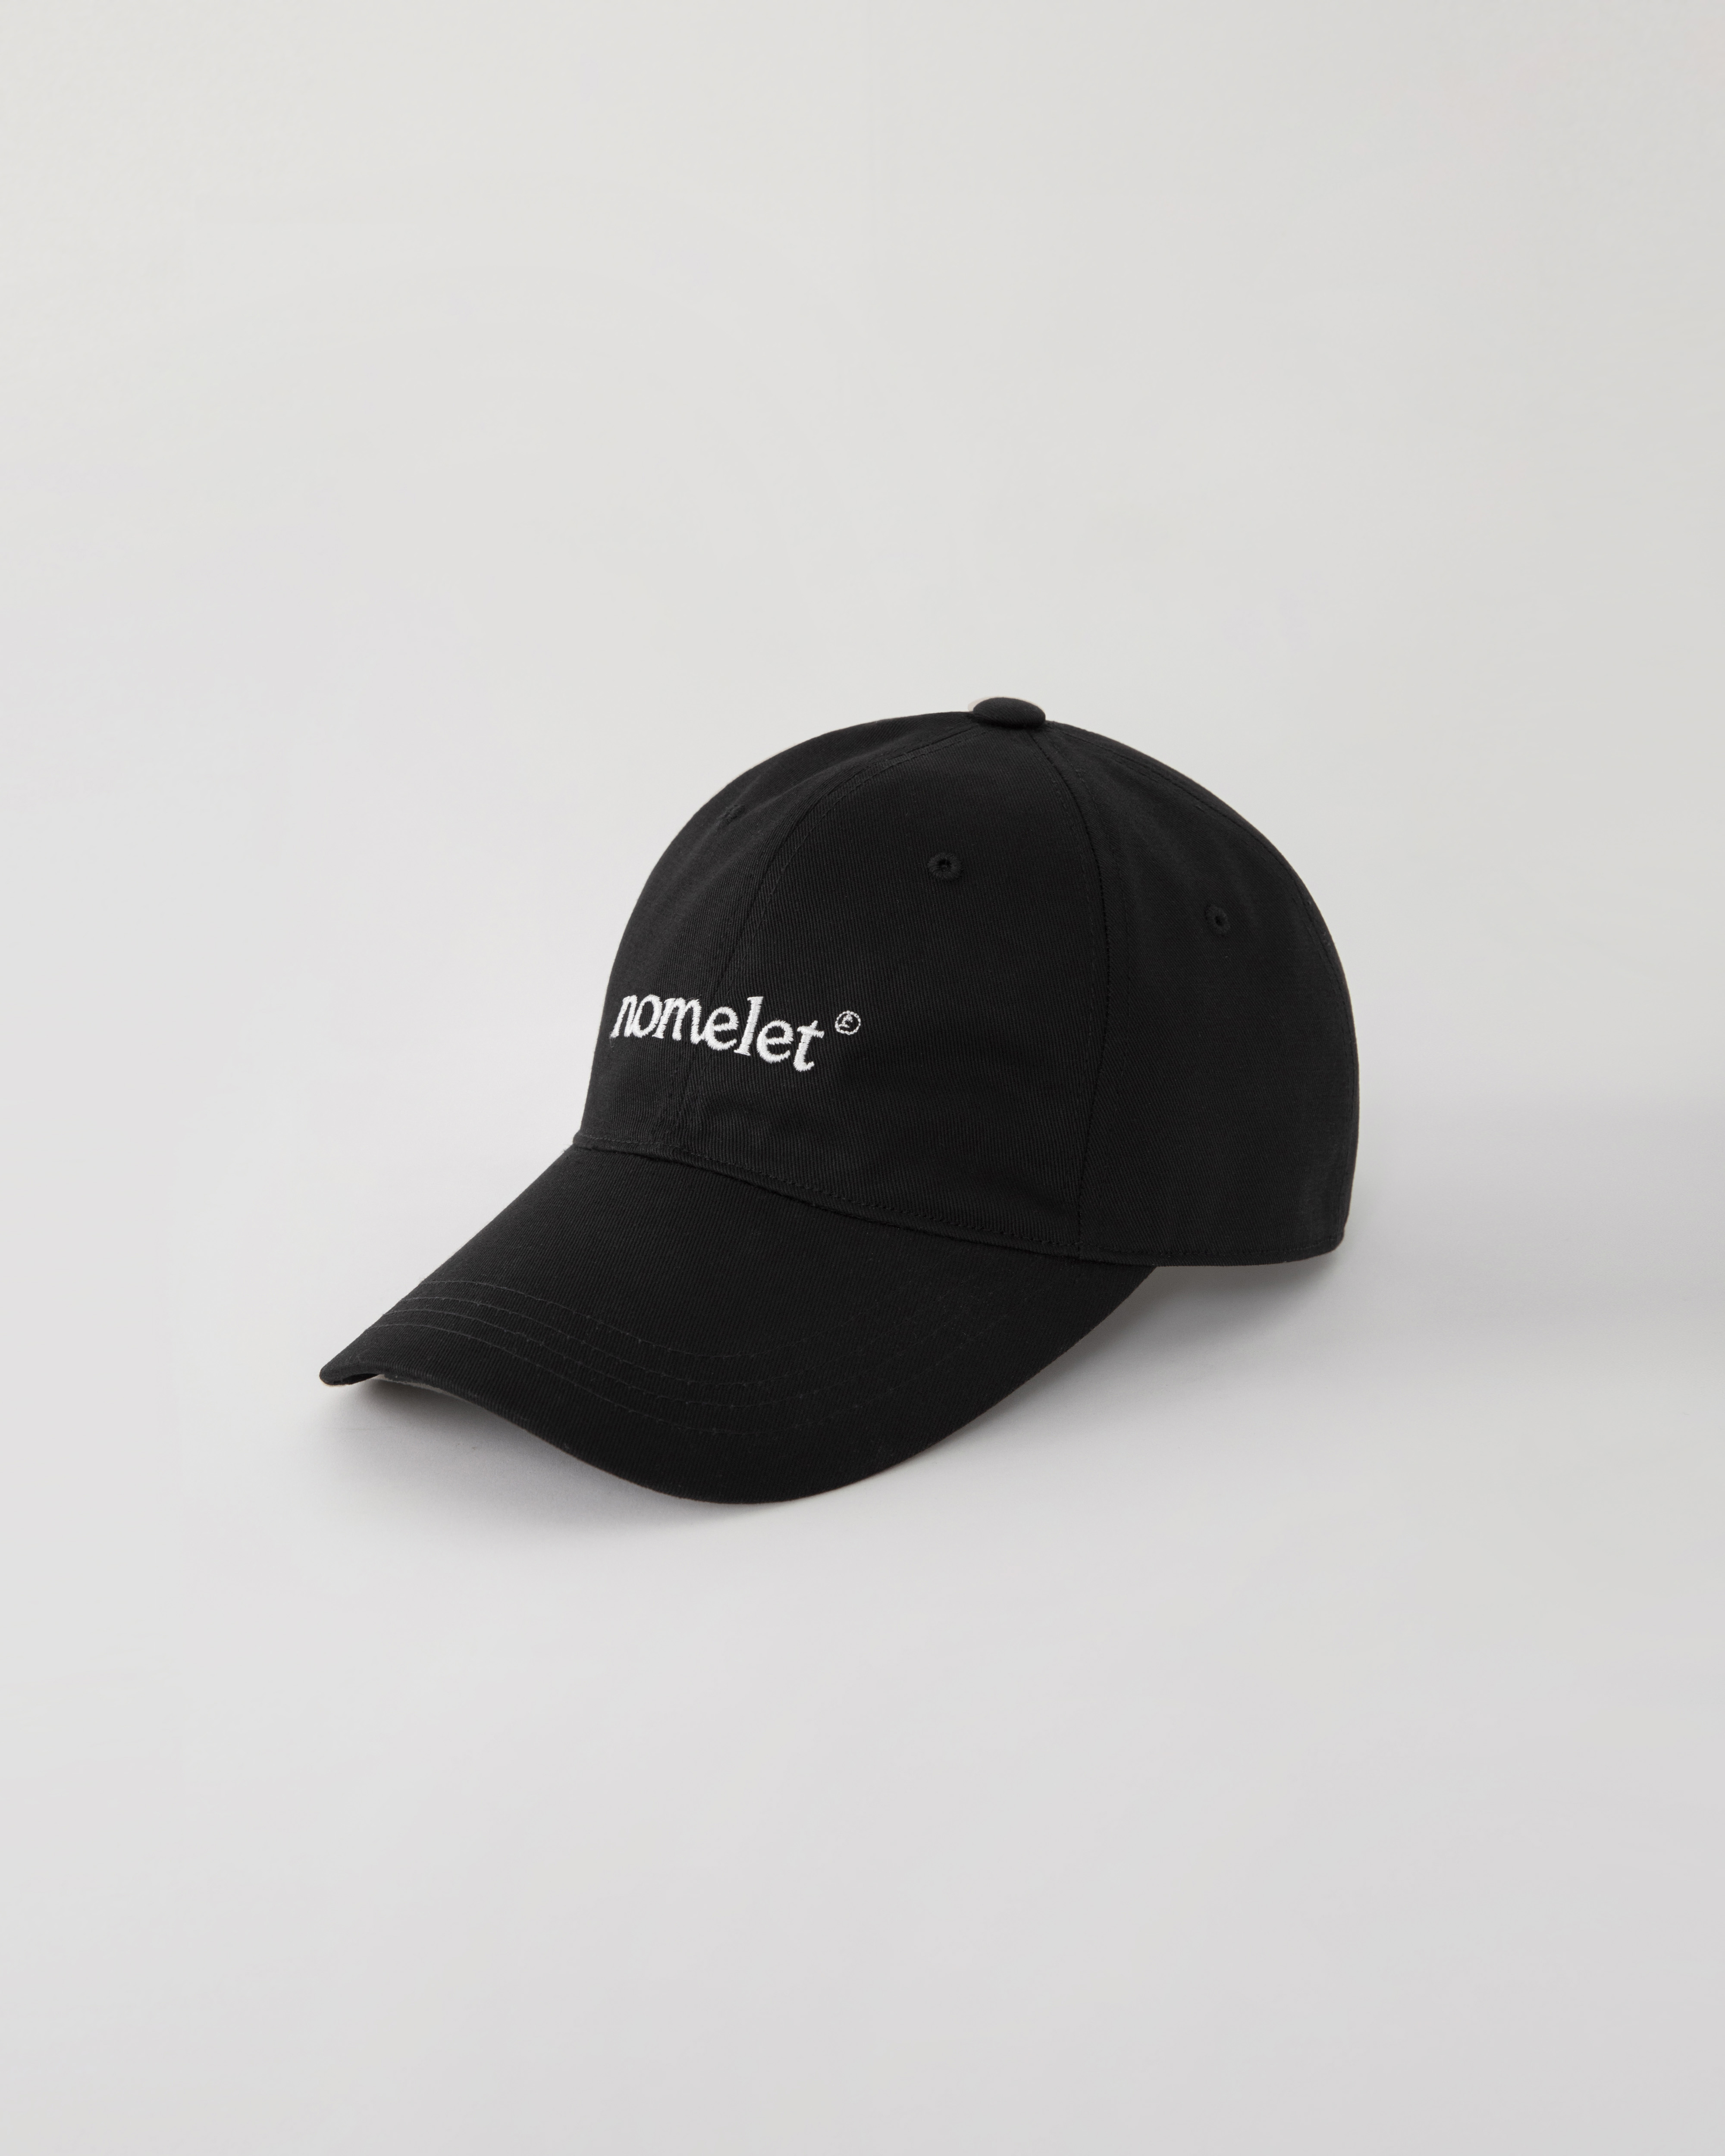 (재입고 일정 조율중) Logo ball cap - black